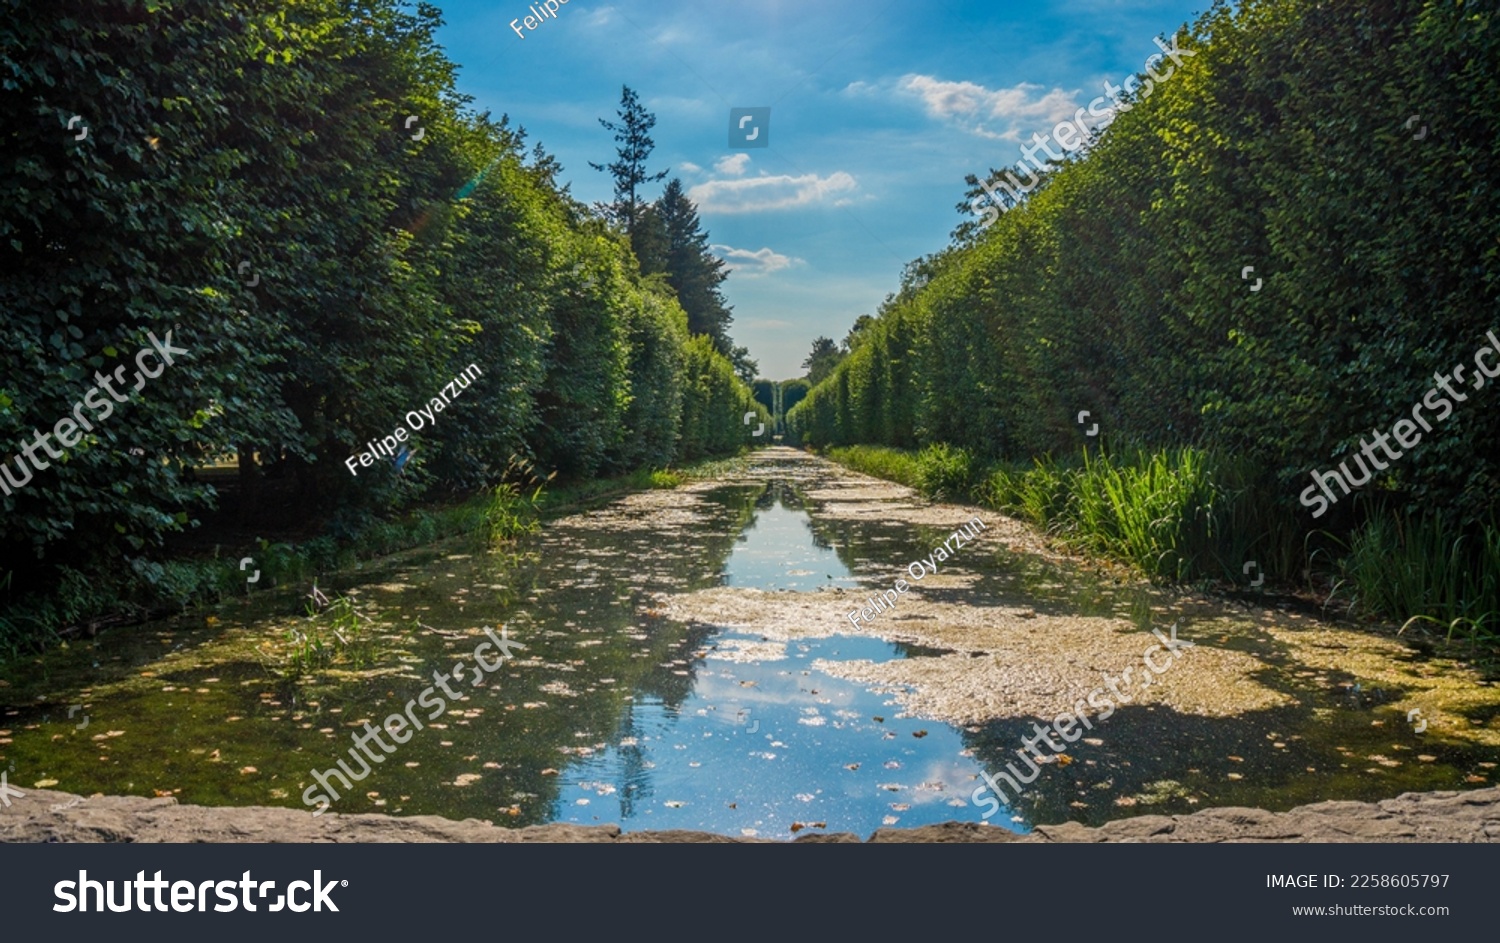 Water in Oliva (Oliwa) park in summer time in Gdansk, Poland. #2258605797